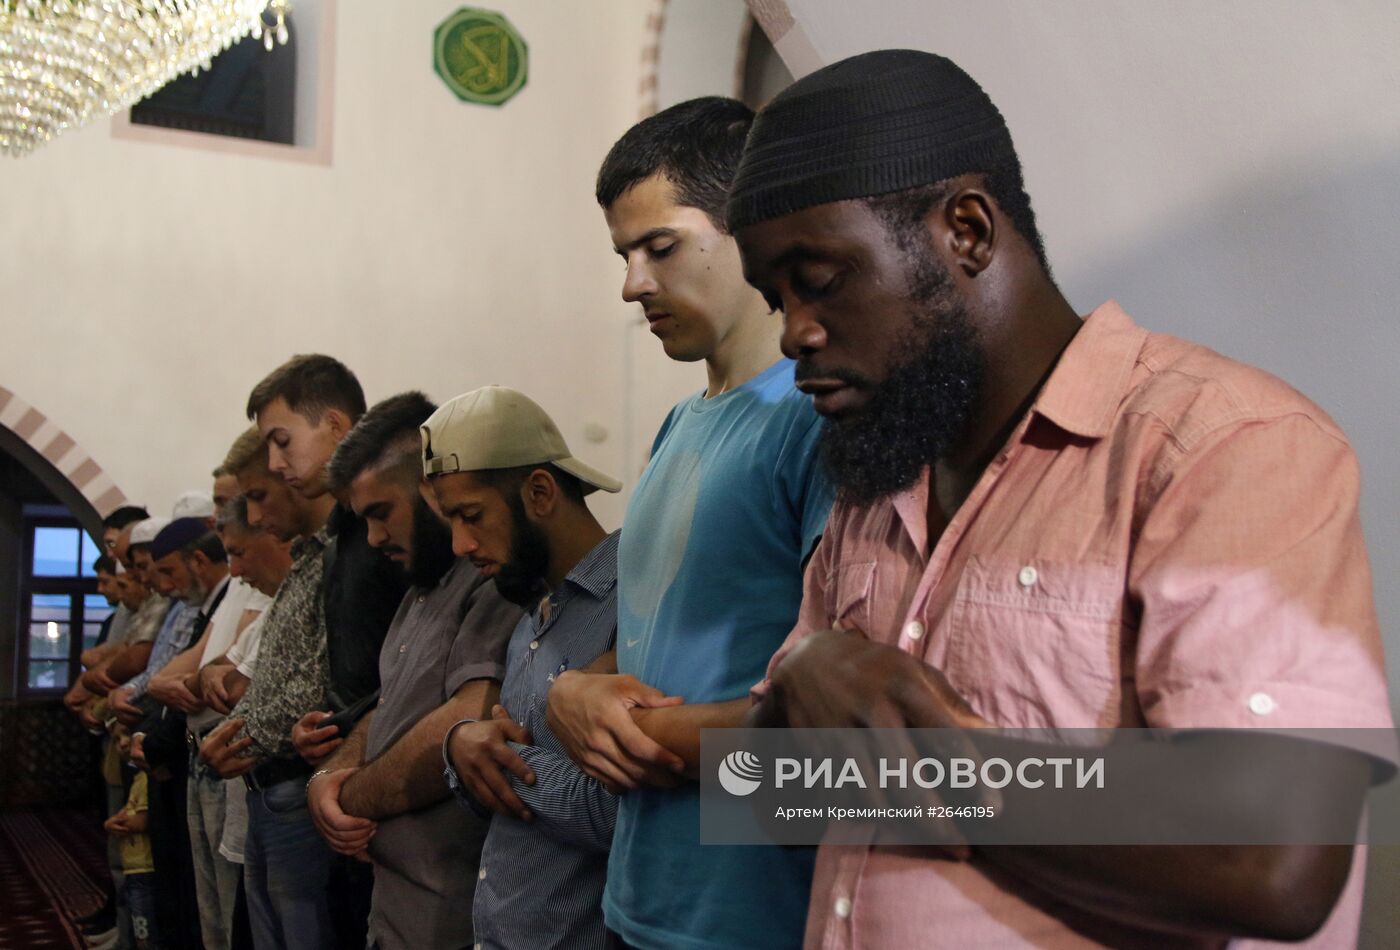 Мусульмане во время священного месяца Рамадан в Симферополе